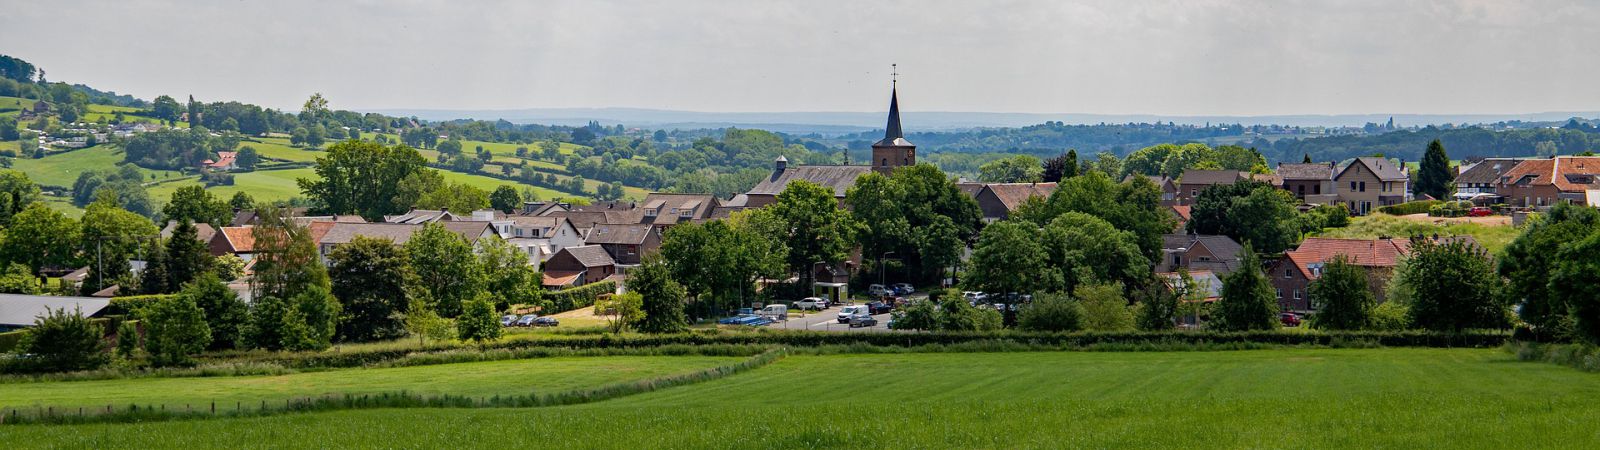 Prachtige Limburgse landschappen